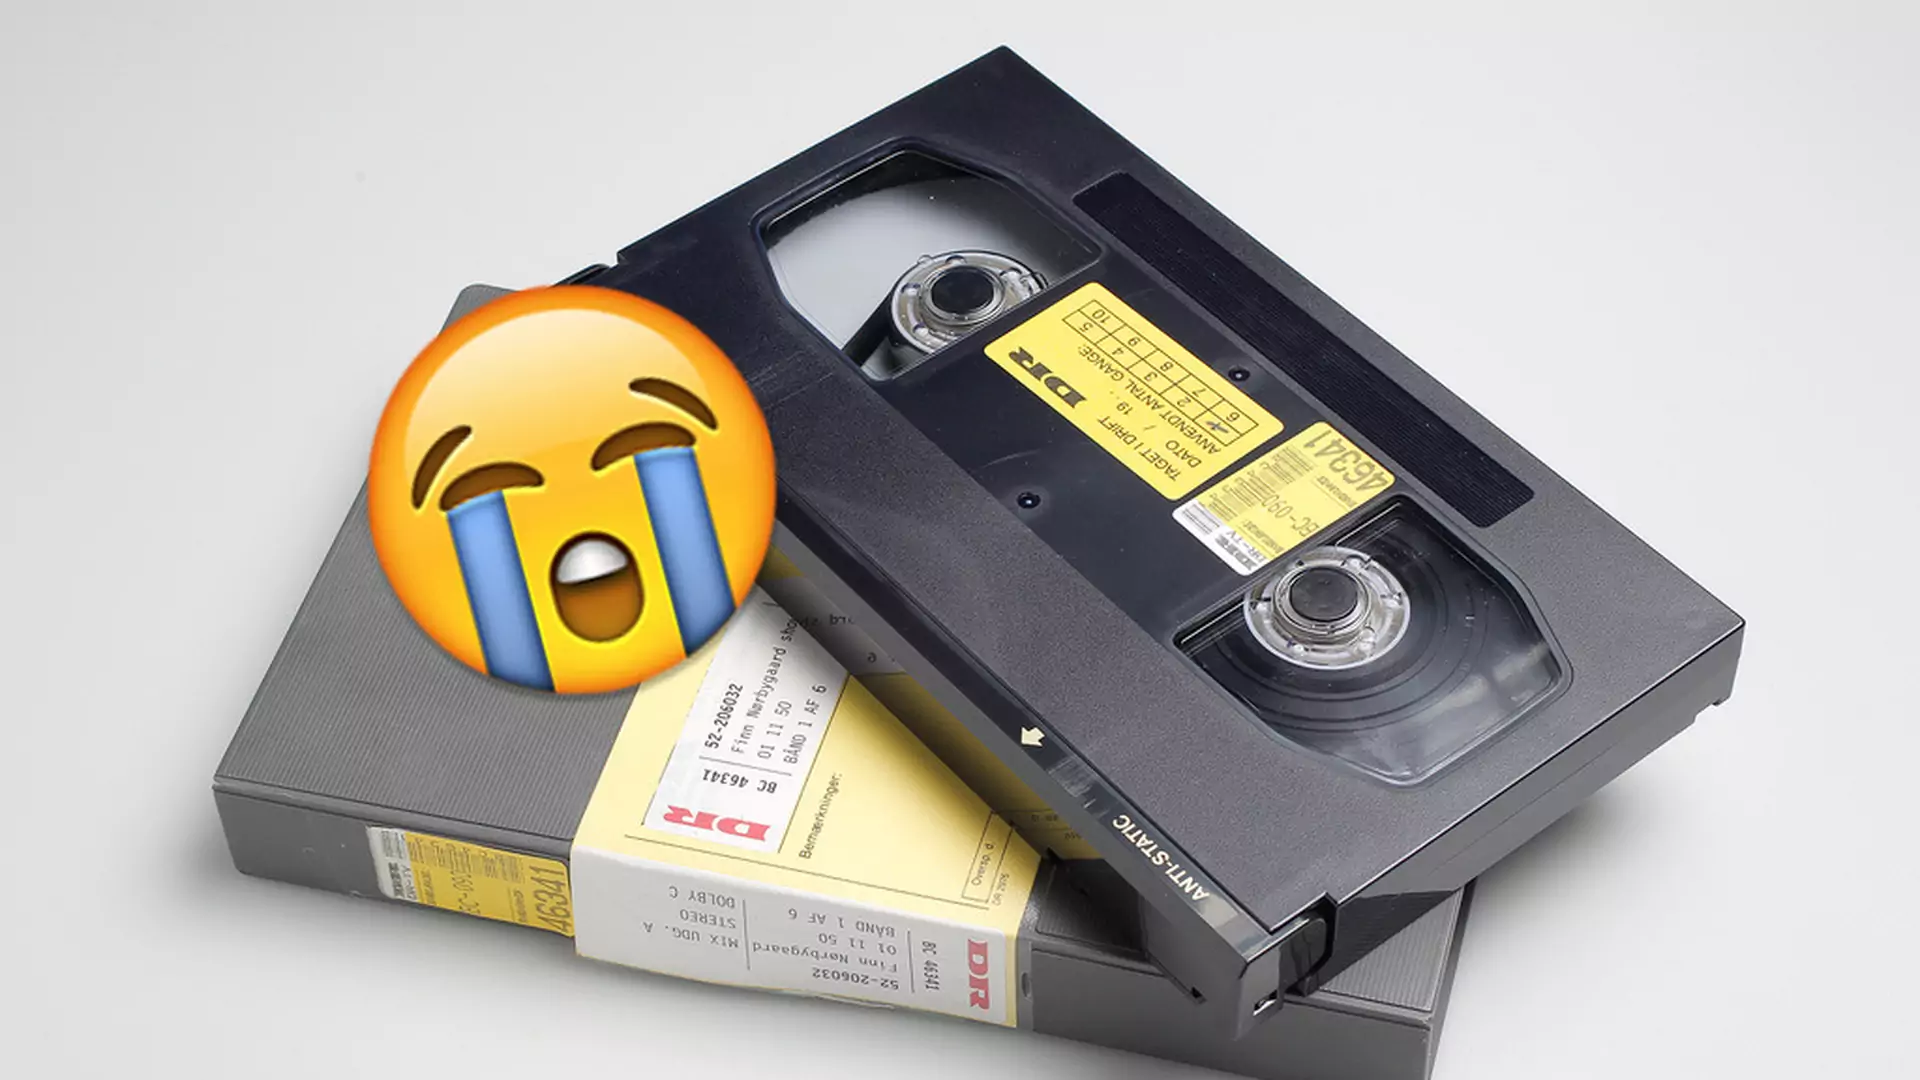 Czy to już koniec kaset VHS? Ostatni producent magnetowidów wywiesza białą flagę